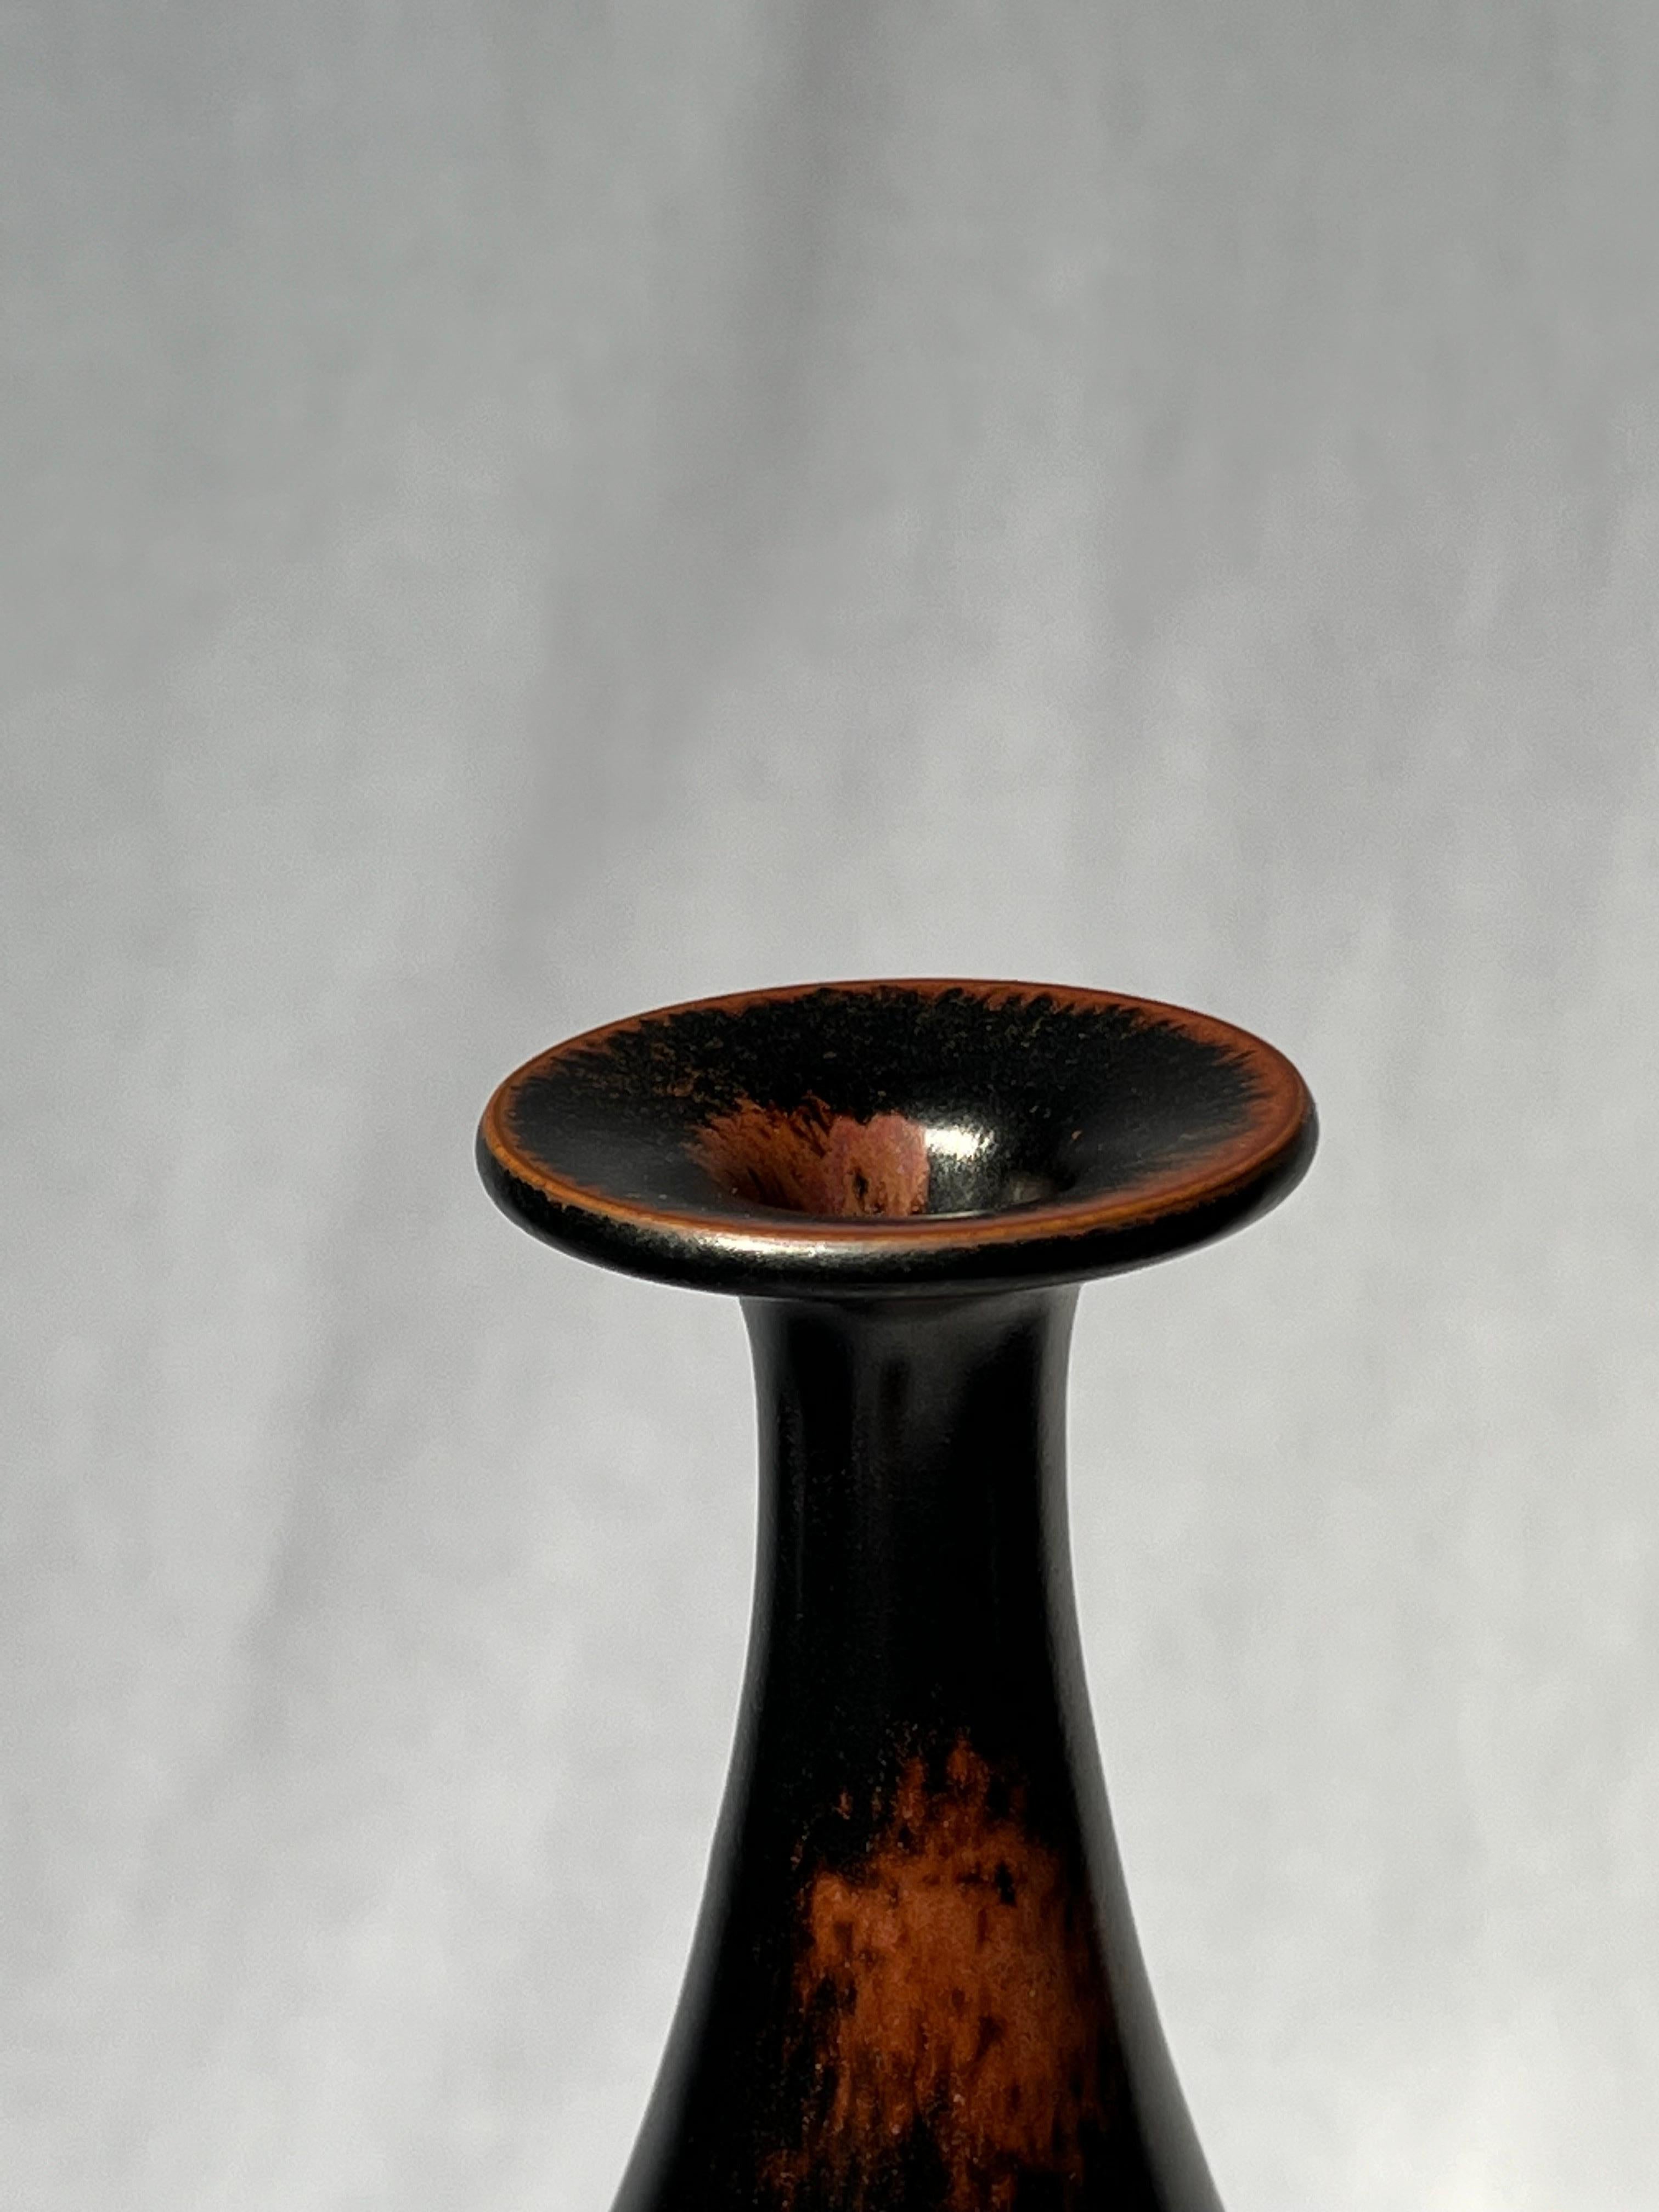 Scandinavian Modern Stig Lindberg Unique Vase in black Glaze Tenmoku Made by Hand Sweden 1969 For Sale